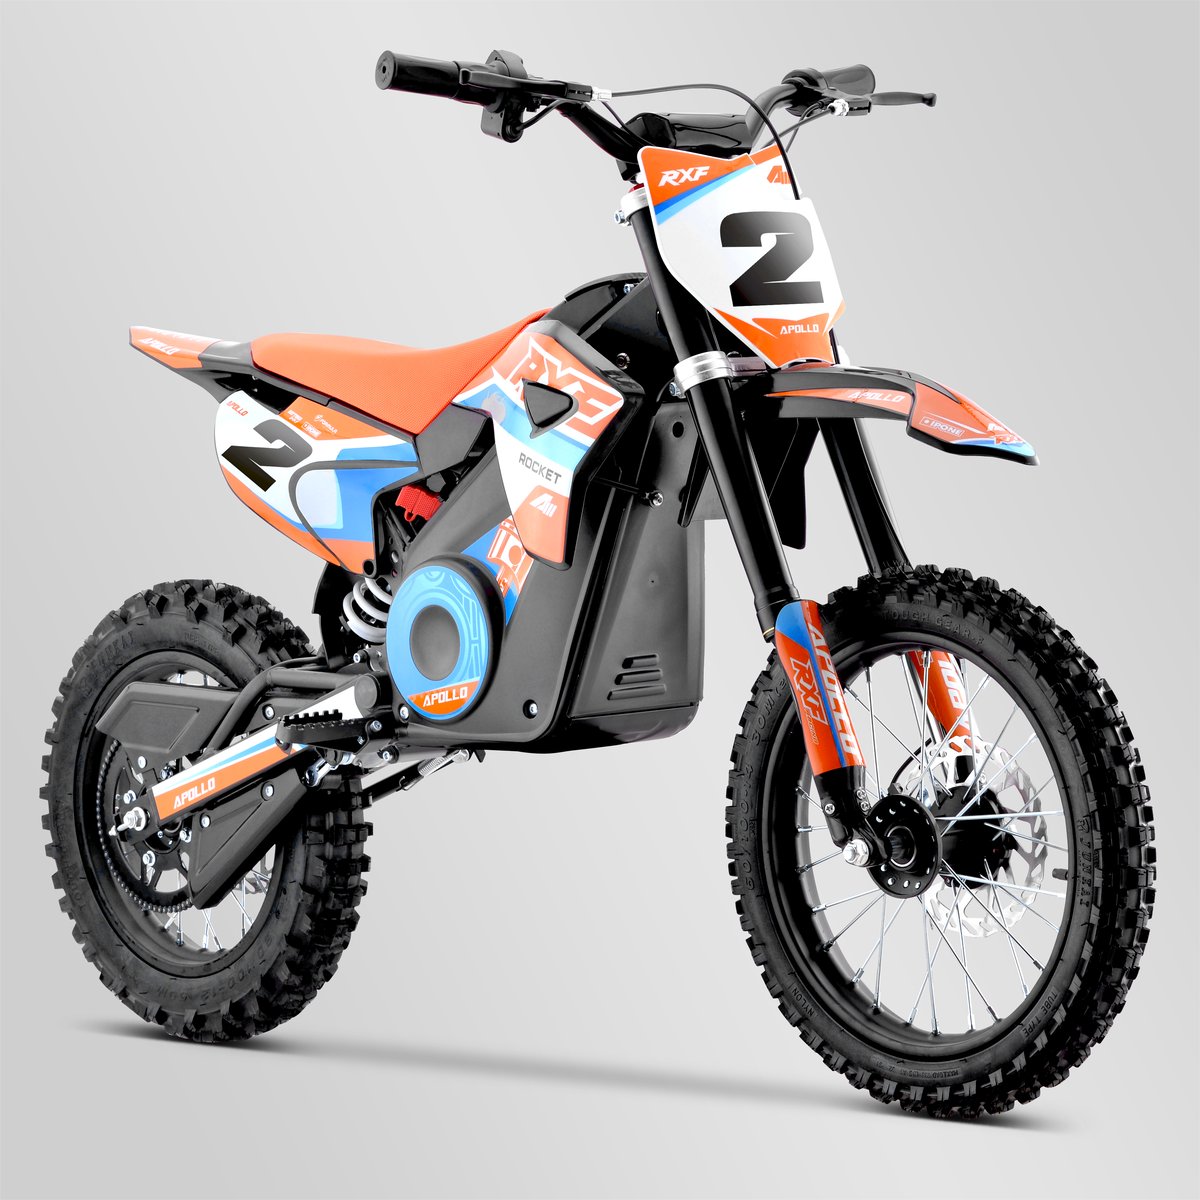 dirt-bike-enfant-apollo-rfz-rocket-1300w-2021-1-rouge